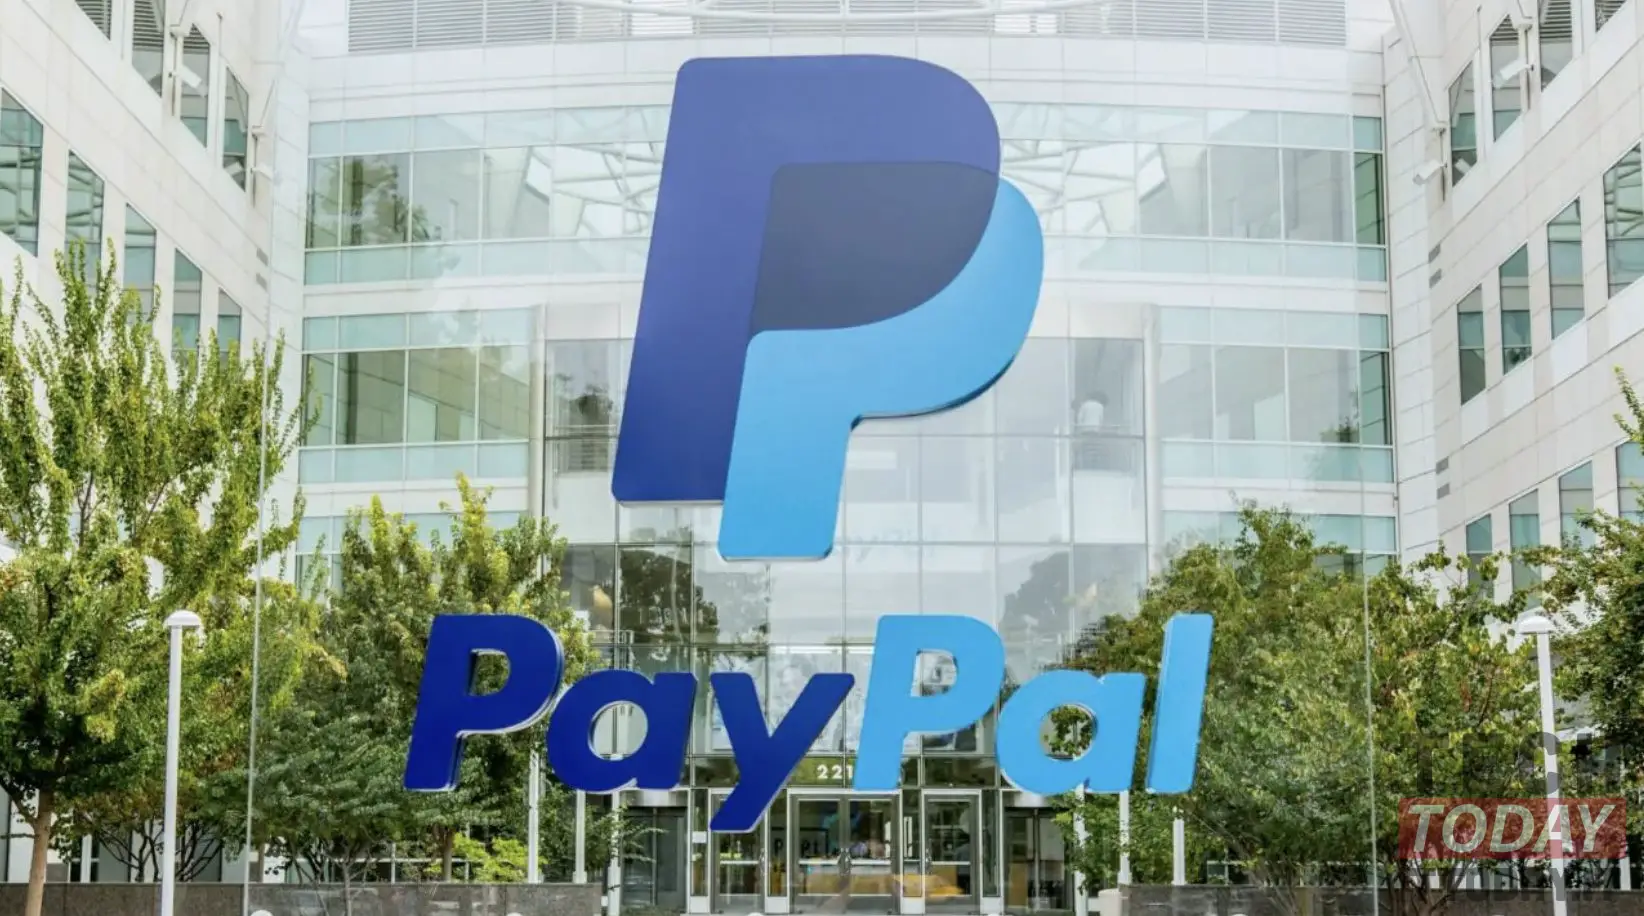 PayPal sal €10 hef as ons nie die rekening gebruik nie